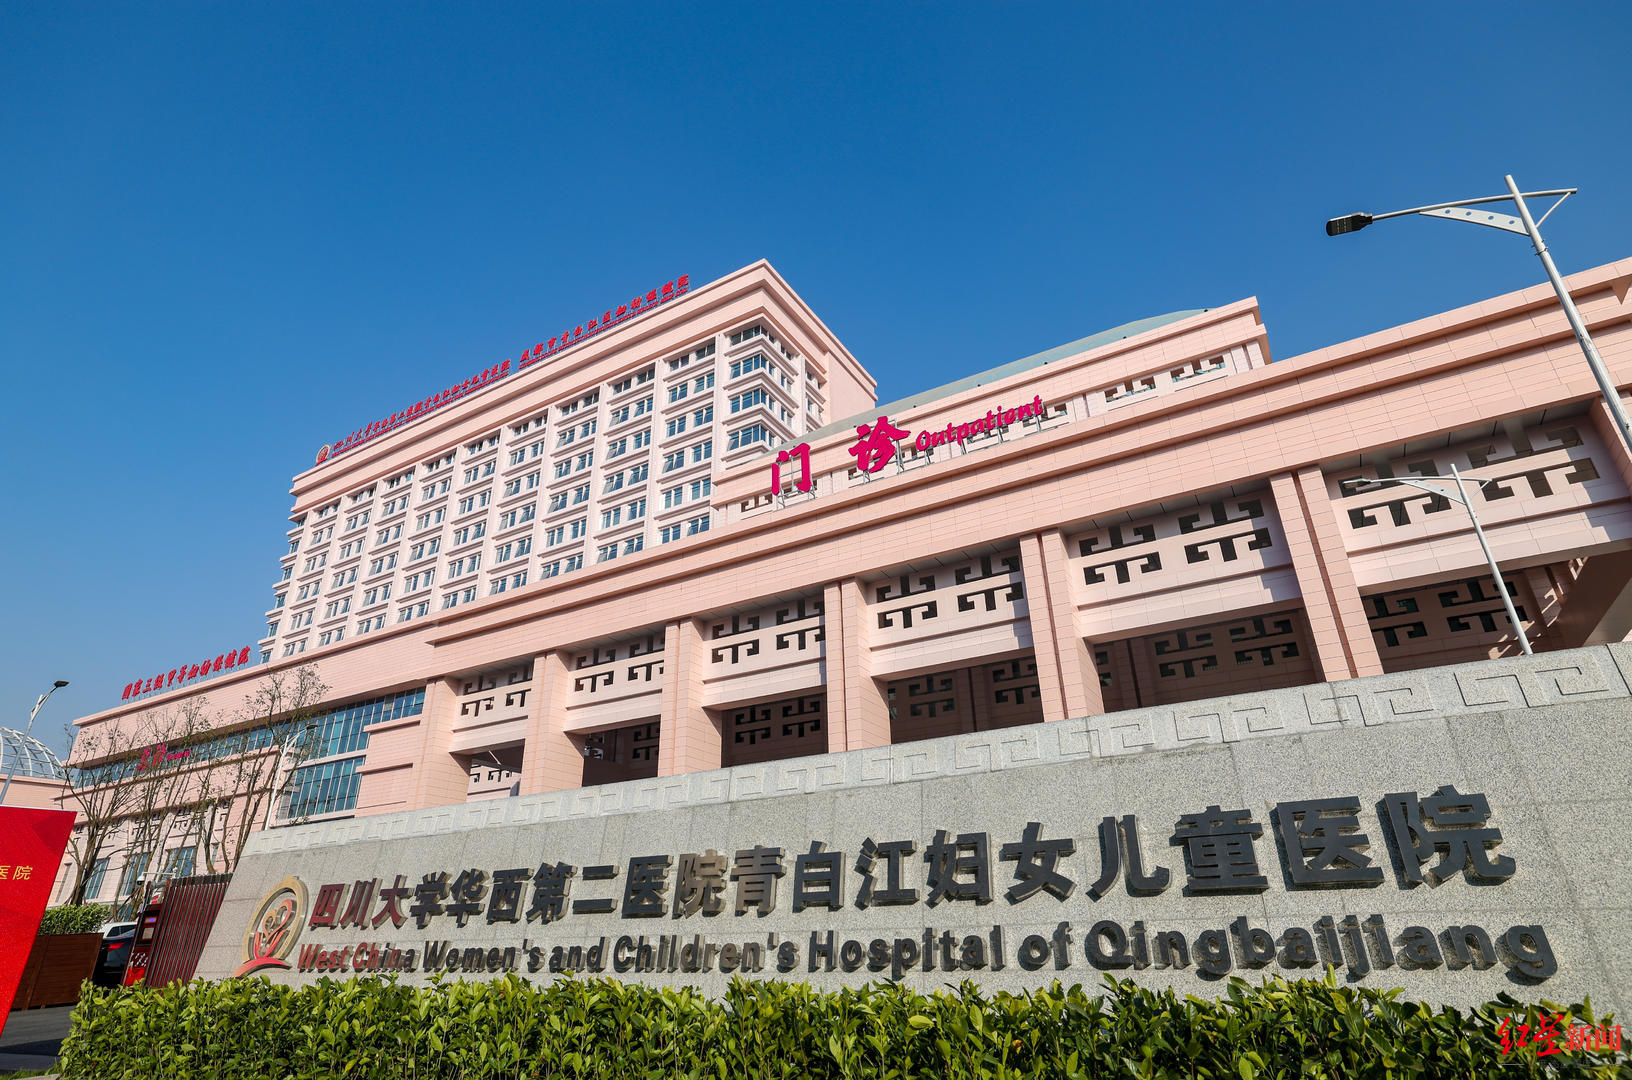 “华西”四川大学华西第二医院青白江妇女儿童医院今日正式开诊